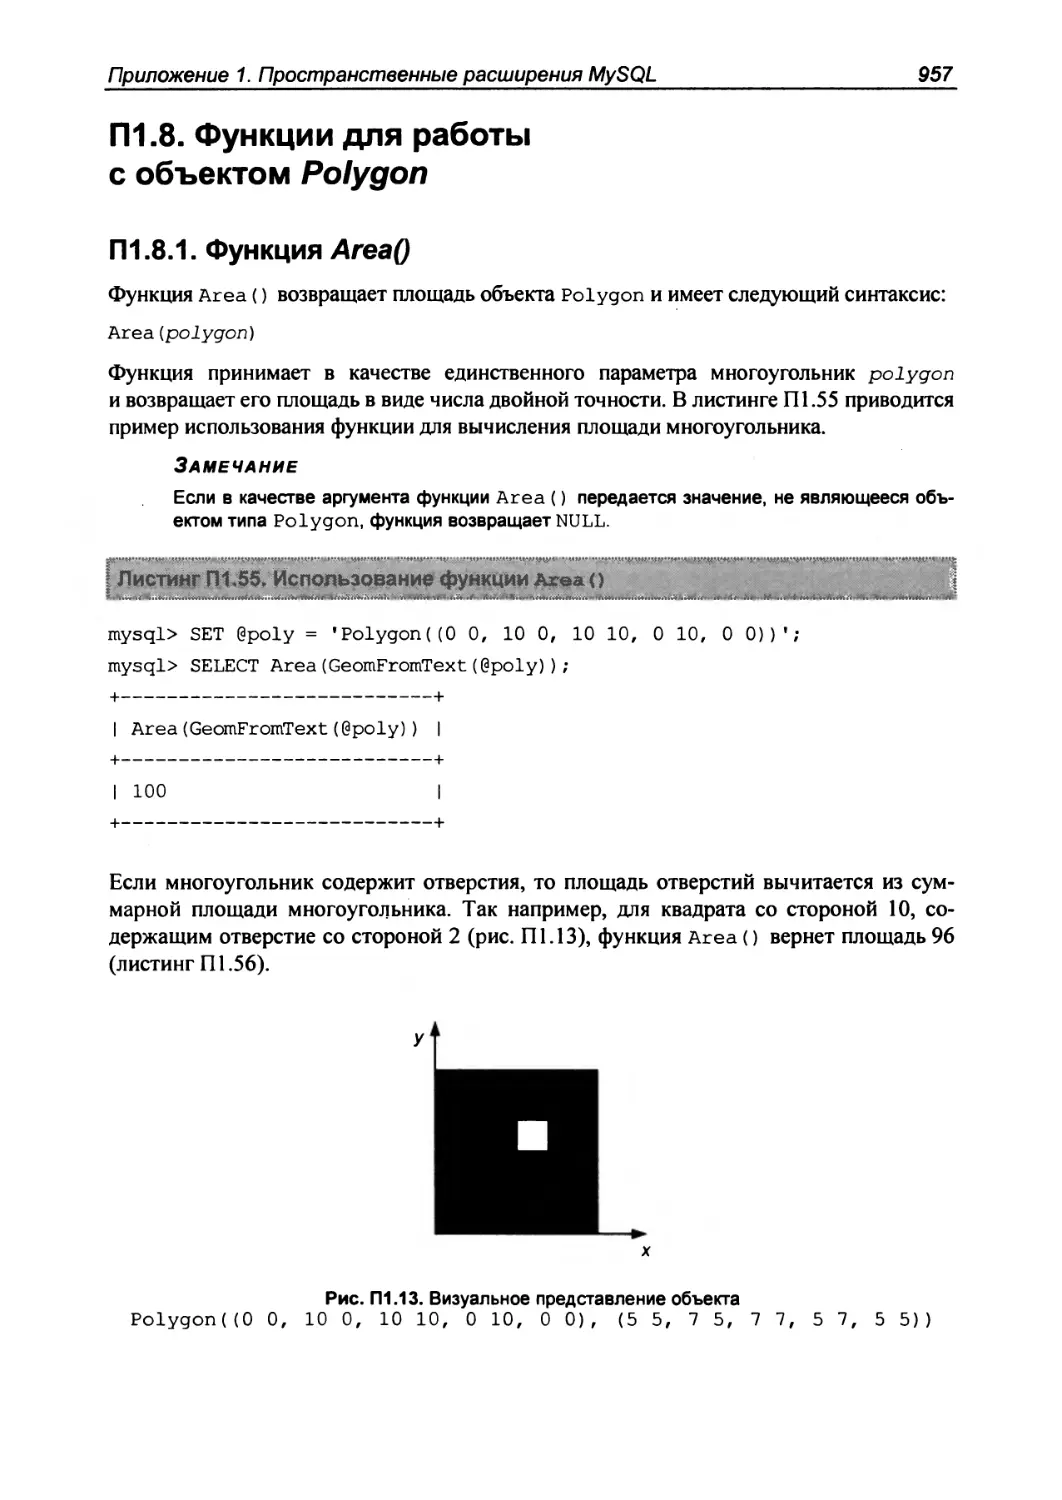 П1.8. Функции для работы с объектом Polygon